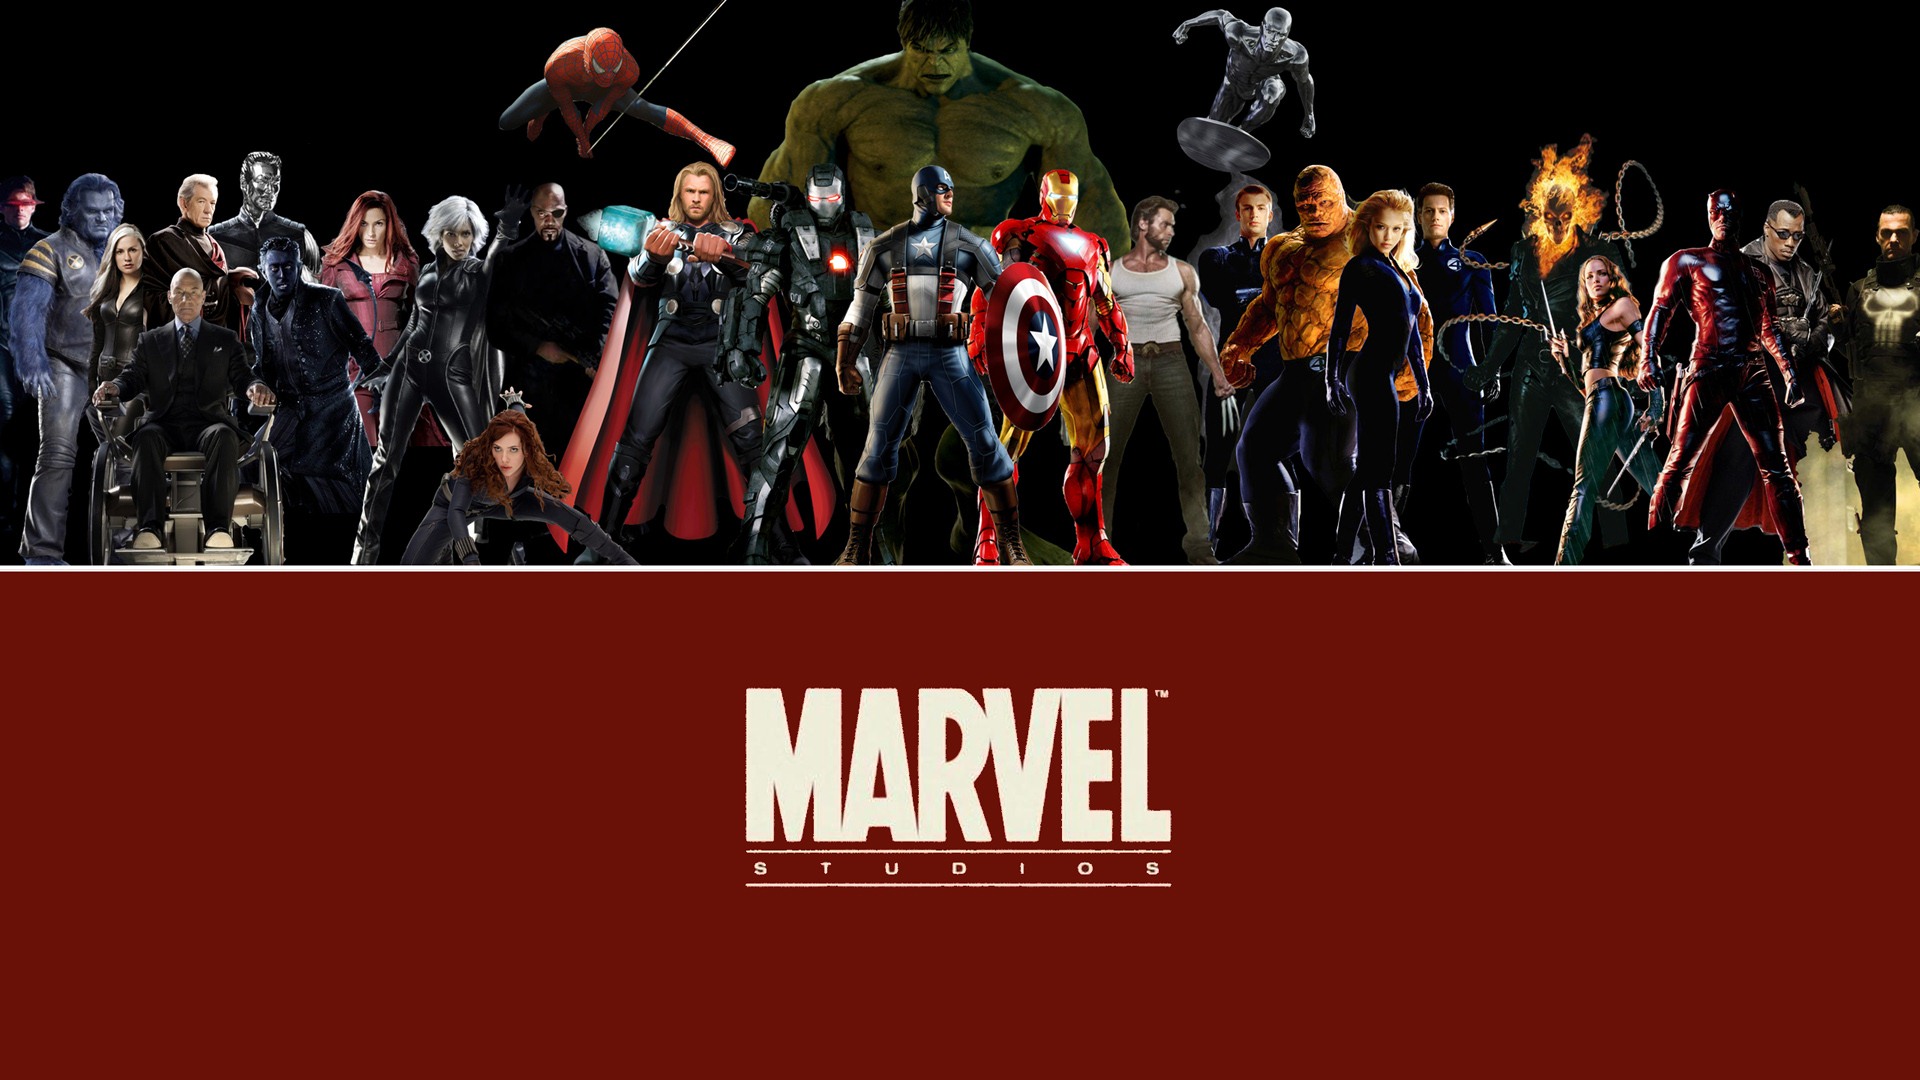 The Avengers 2012 HD Wallpaper #8 - 1920x1080